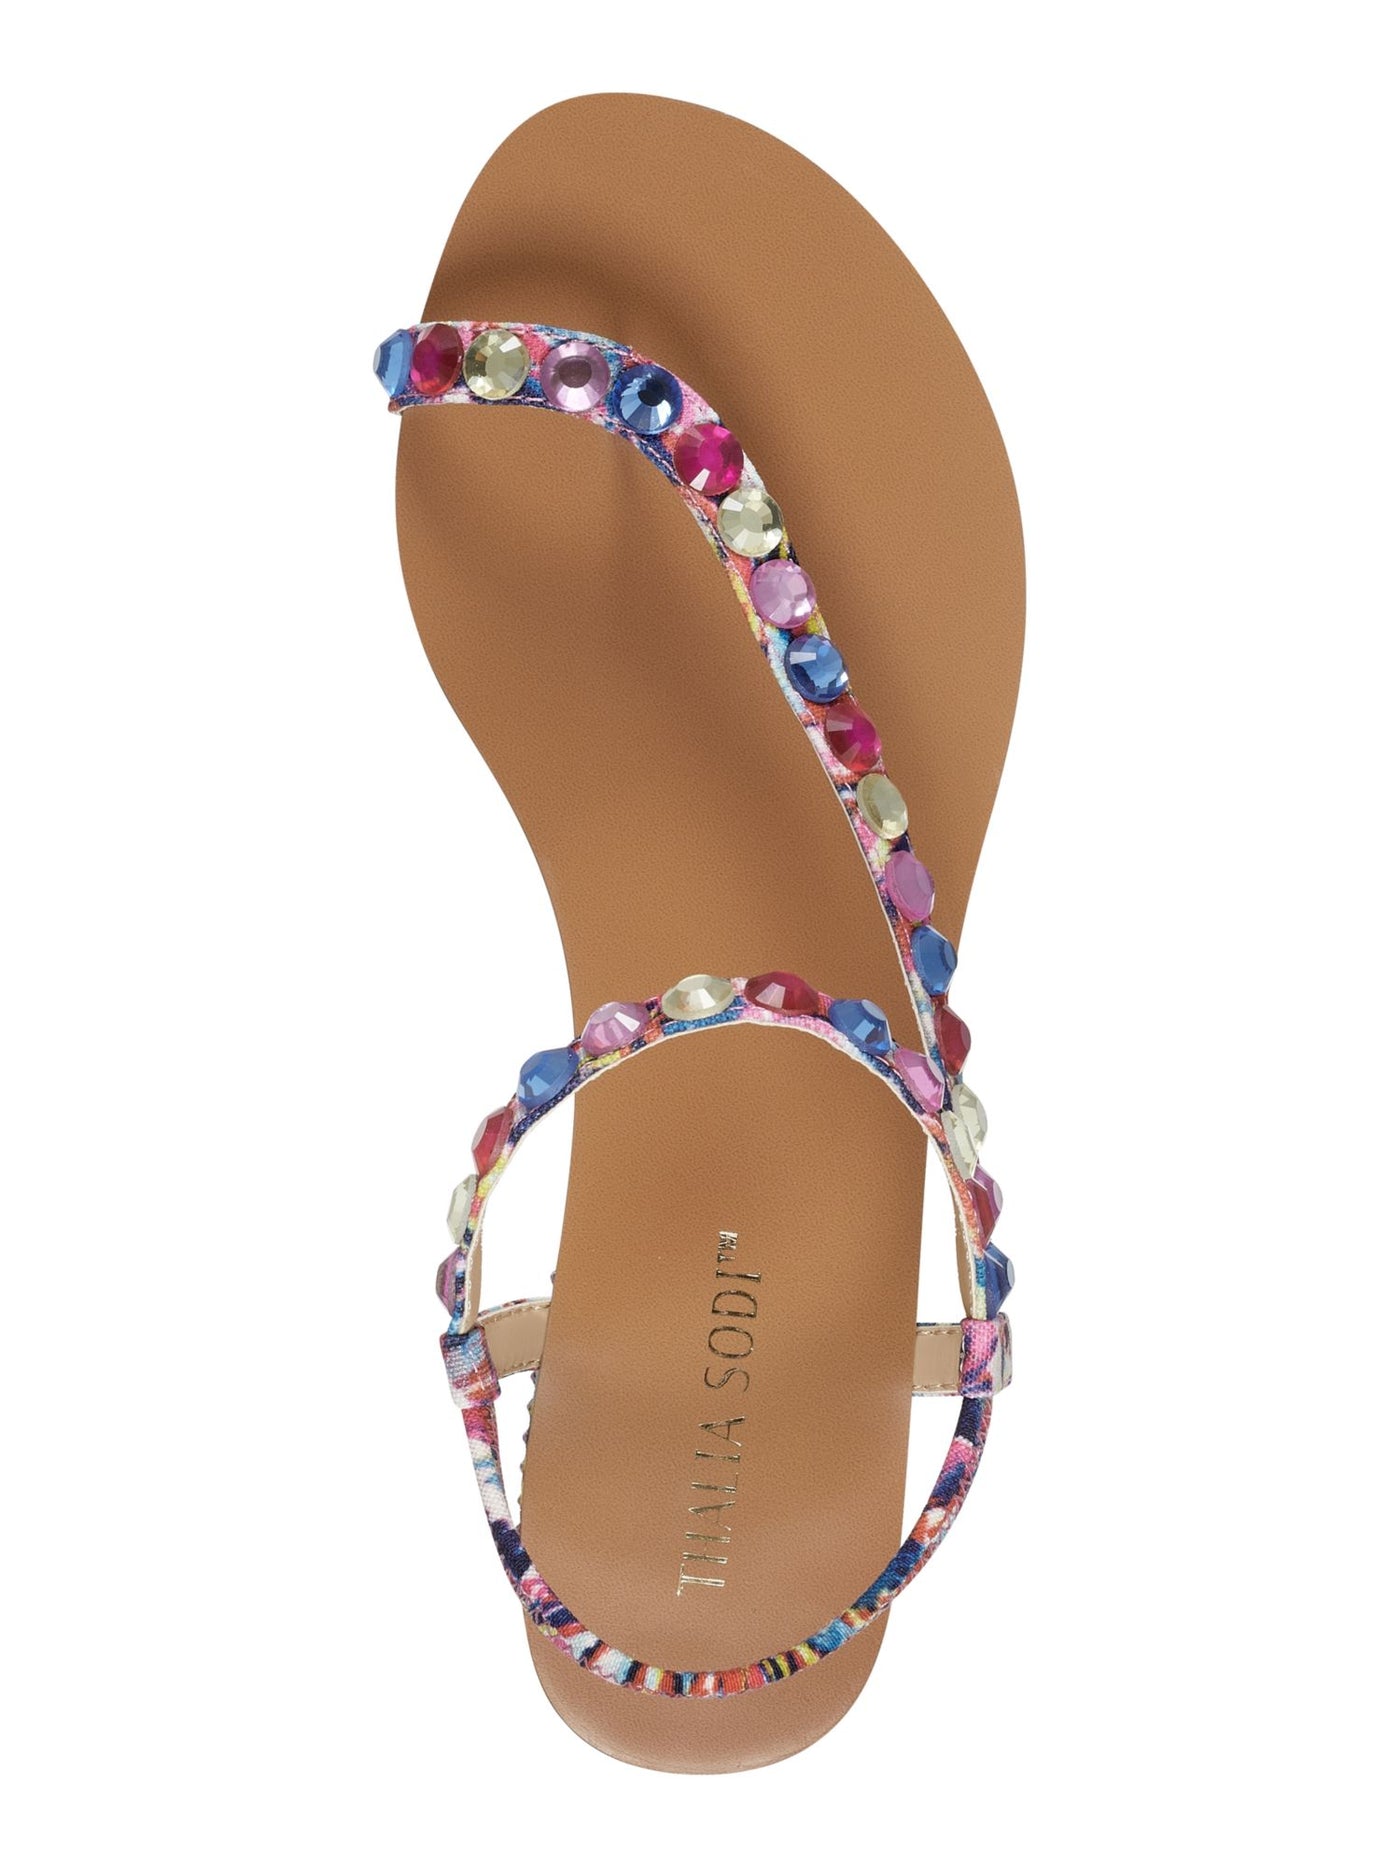 THALIA SODI Womens Pink Colorblock Embellished Izabel Round Toe Wedge Slip On Sandals Shoes 7.5 M